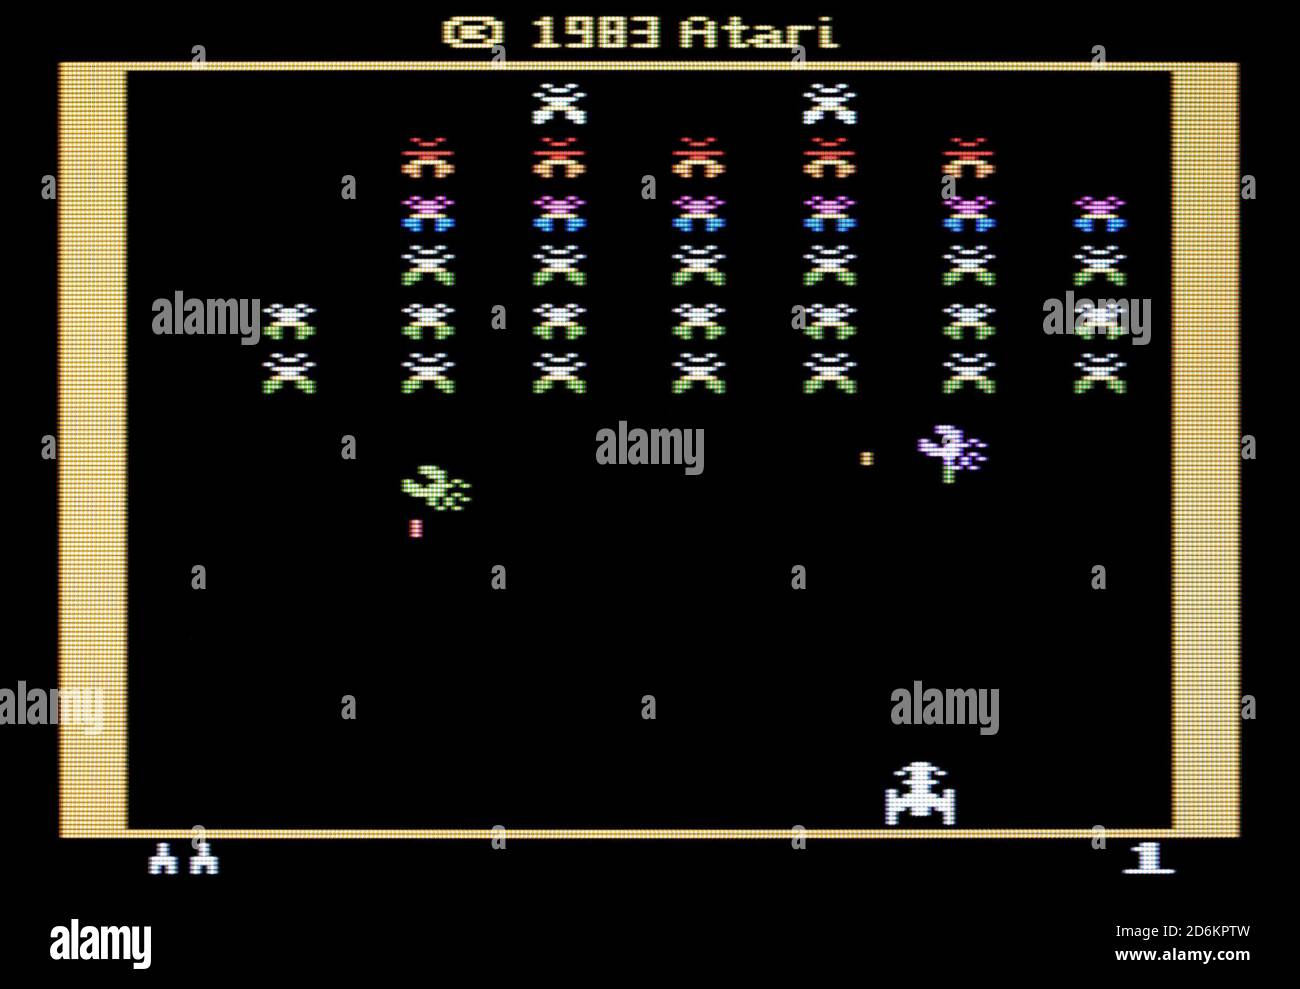 Galaxian - Atari 2600 VCS Videogame - solo per uso editoriale Foto Stock